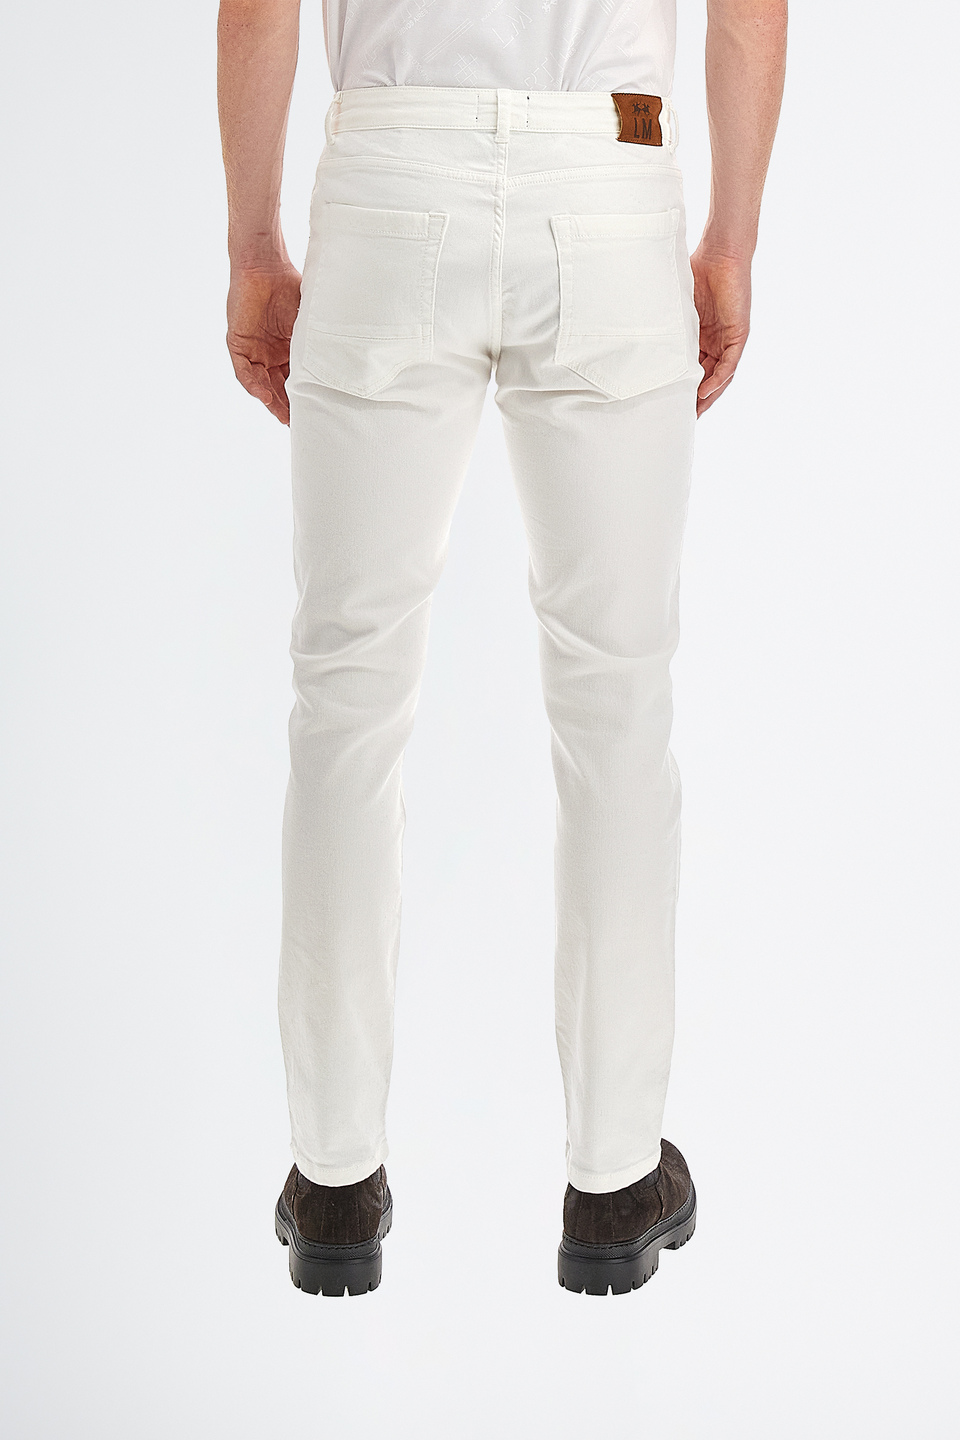 Pantalone da uomo in cotone stretch modello chino regular fit | La Martina - Official Online Shop